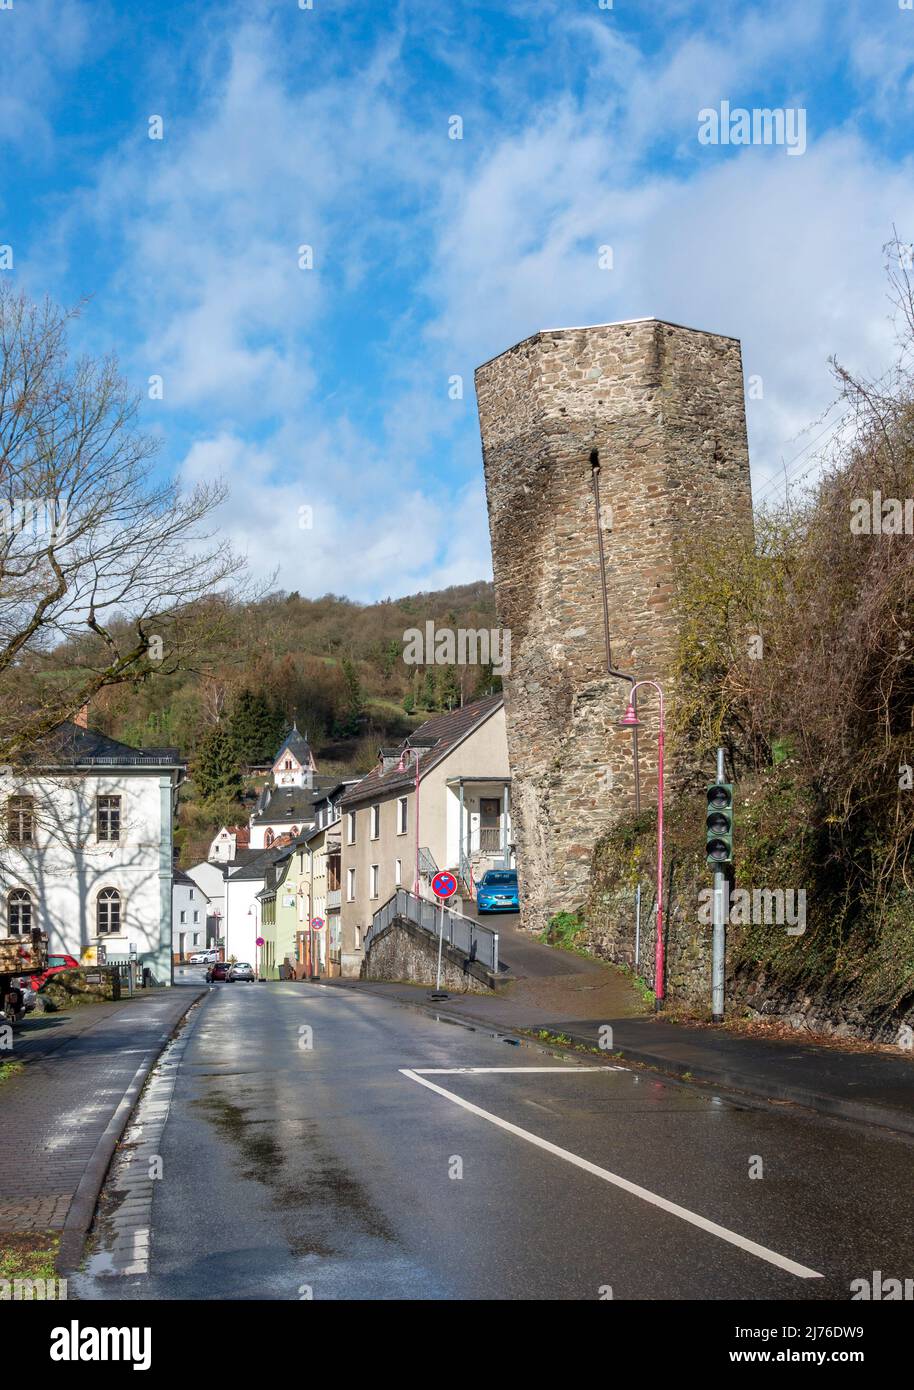 Alemania, Dausenau, la Torre Inclinada de Dausenau es una torre de la muralla medieval de la ciudad. Tiene la mayor inclinación conocida de todas las torres originalmente construidas verticalmente, 5,22 grados. Foto de stock